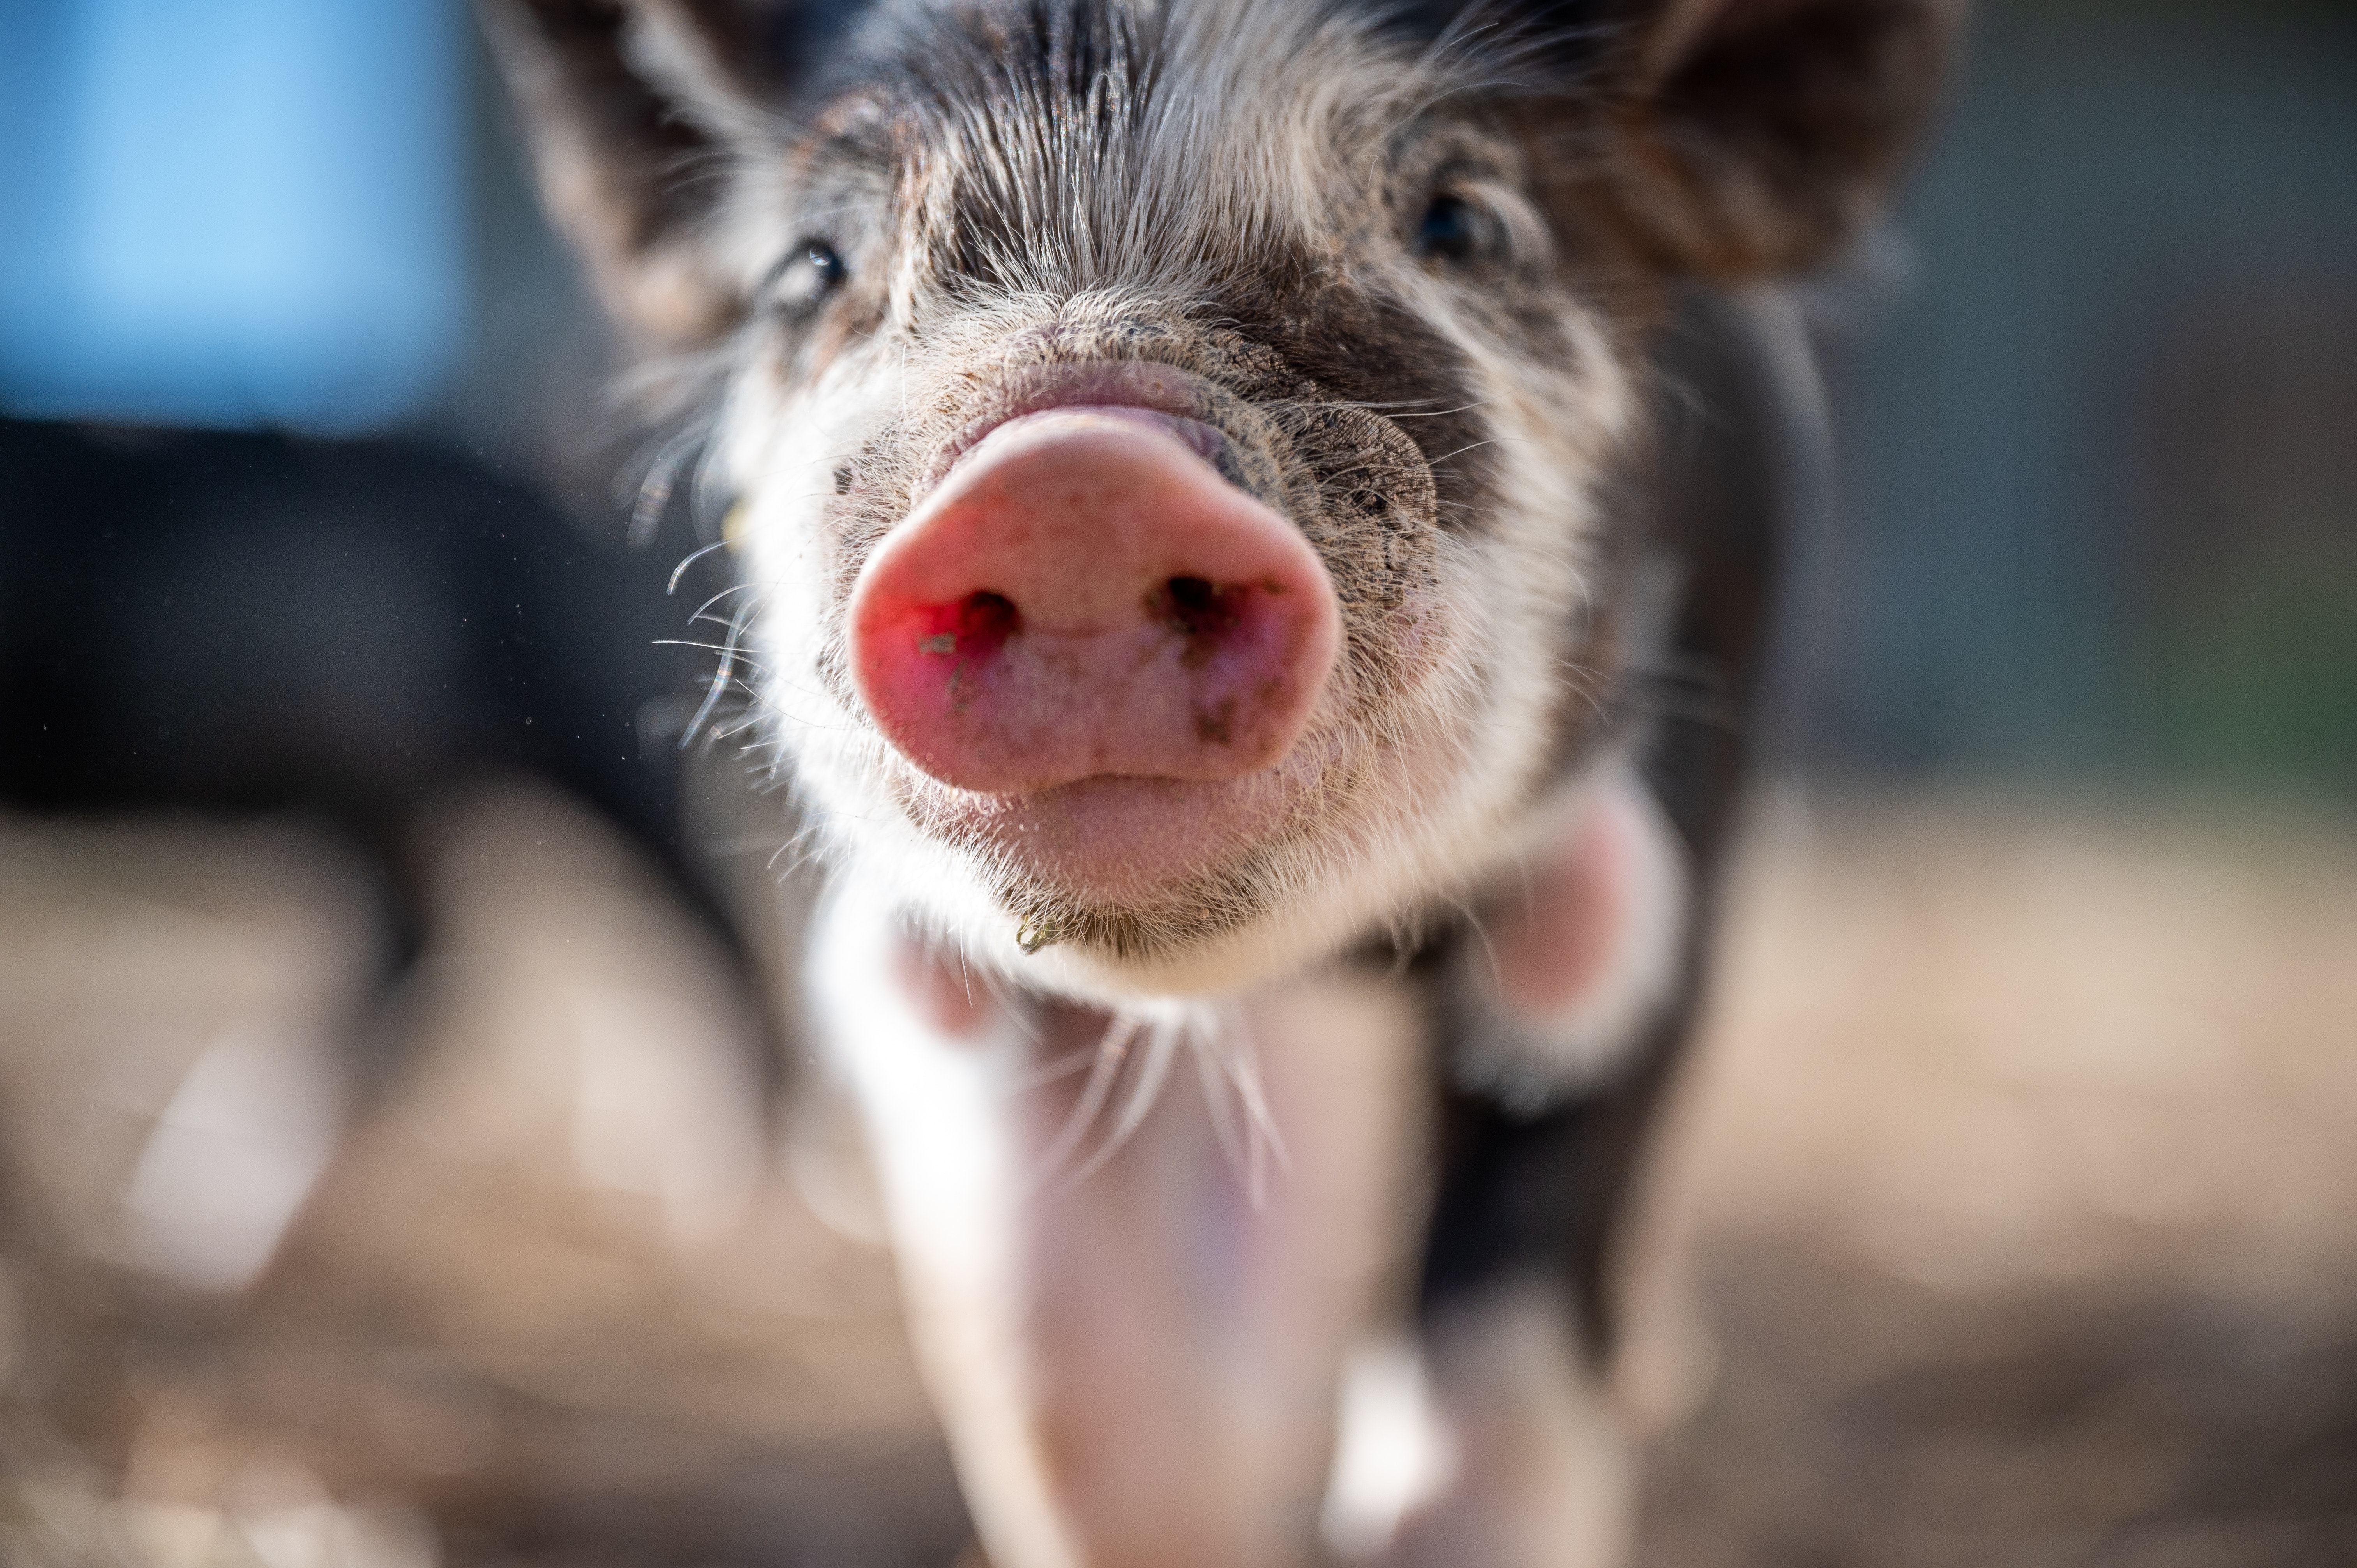 上市猪企3月销量同比上升近6% 正虹科技、傲农生物销量下滑幅度较大